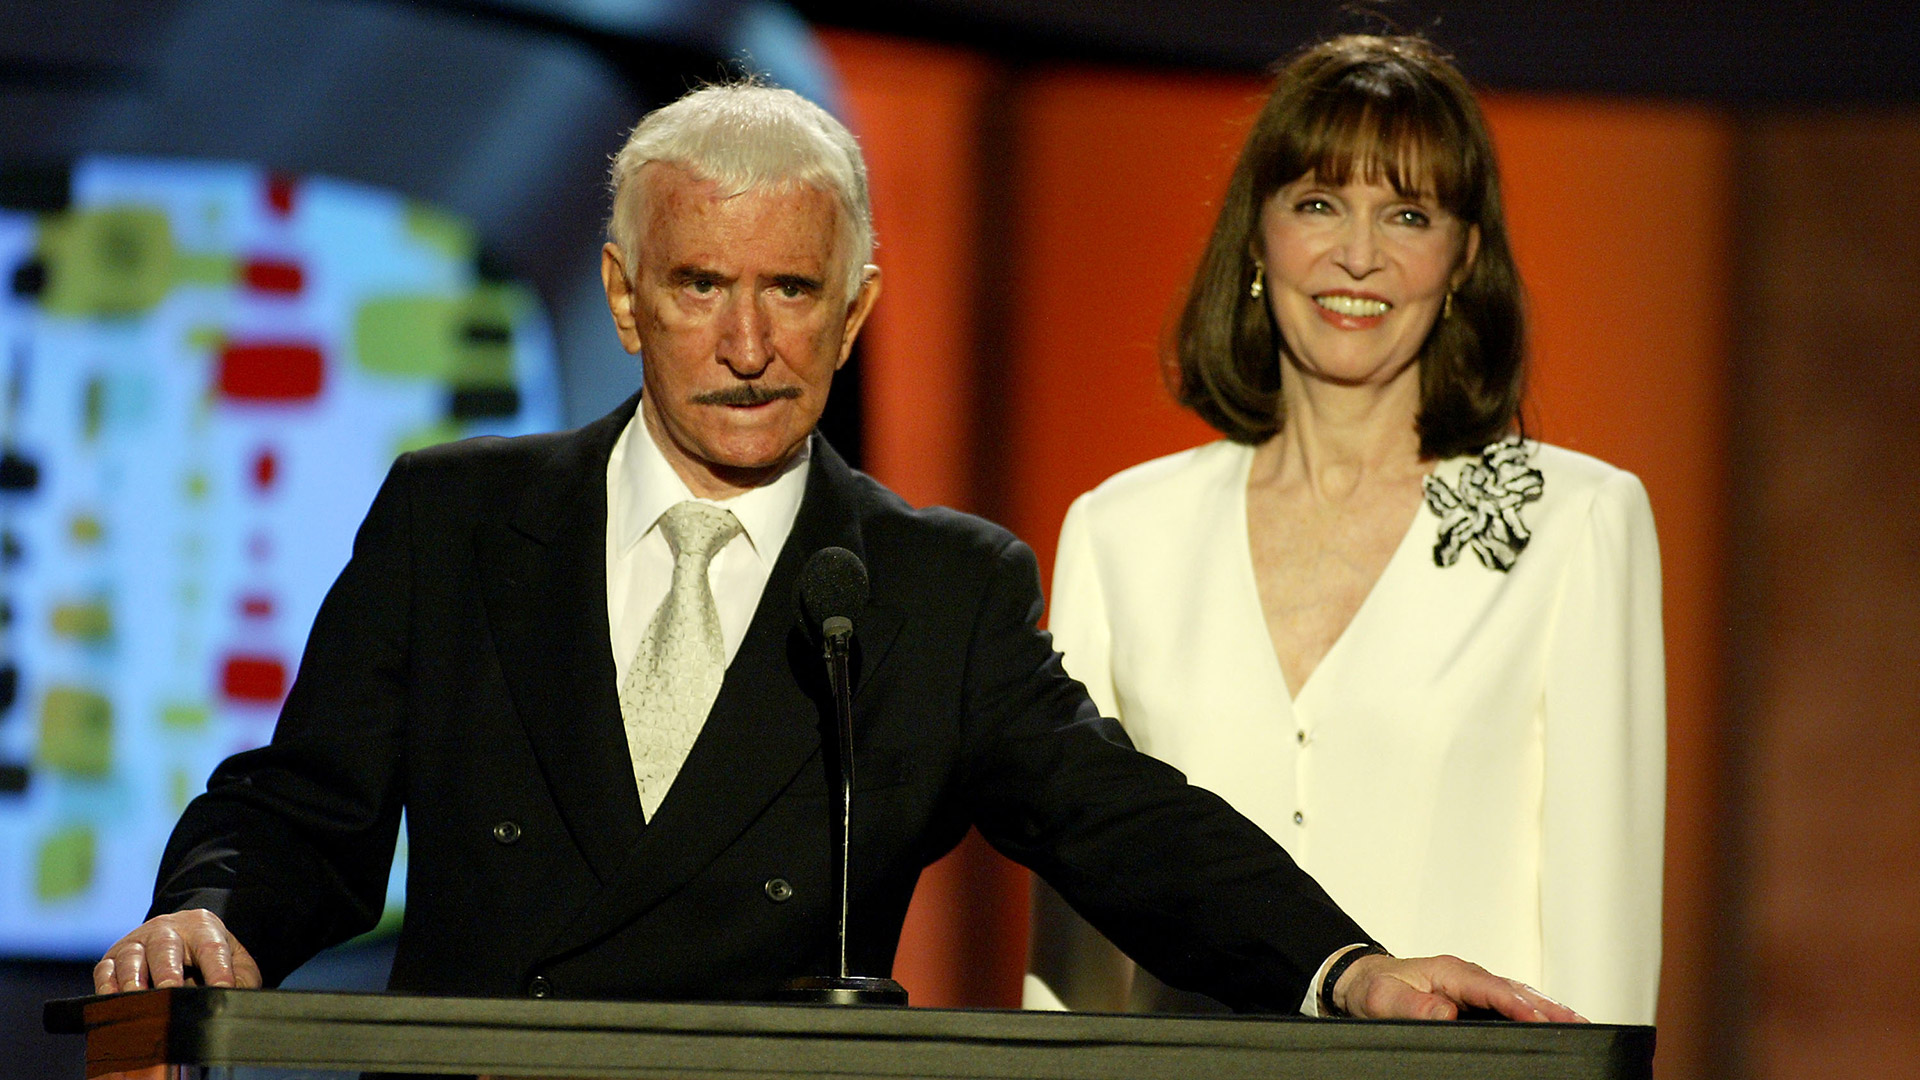 Una de las últimas apariciones de Don Adams y Barbara feldon juntos. fue durante la entrega de unos premios televisivos en 2003 (Photo by Kevin Winter/Getty Images)